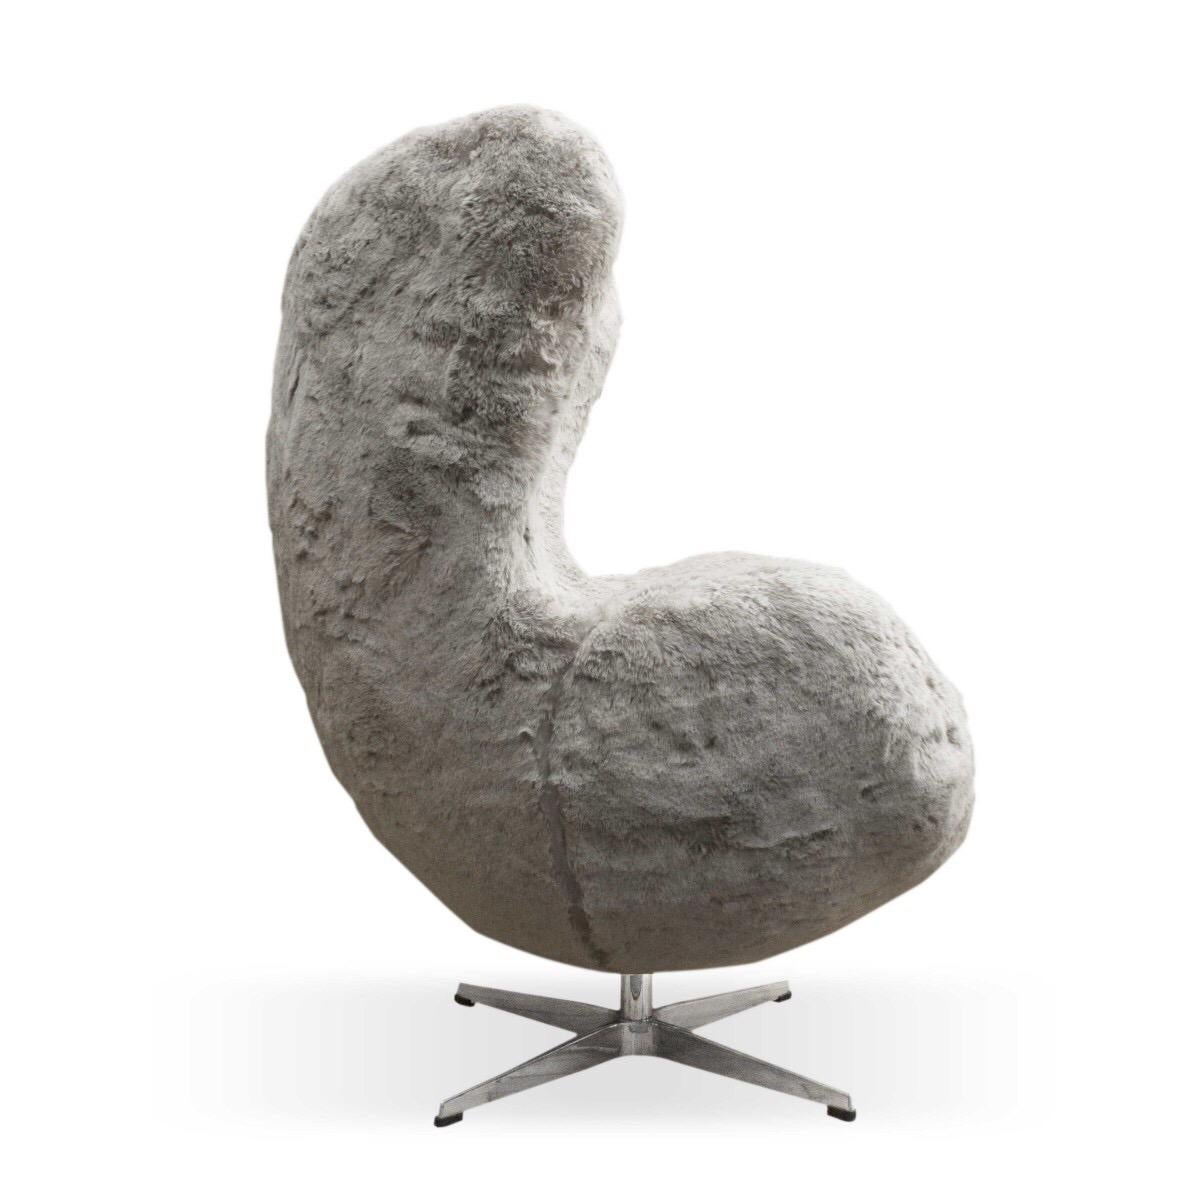 Danish Egg Chair by Arne Jacobsen for Fritz Hansen in Gray Faux Sheepskin